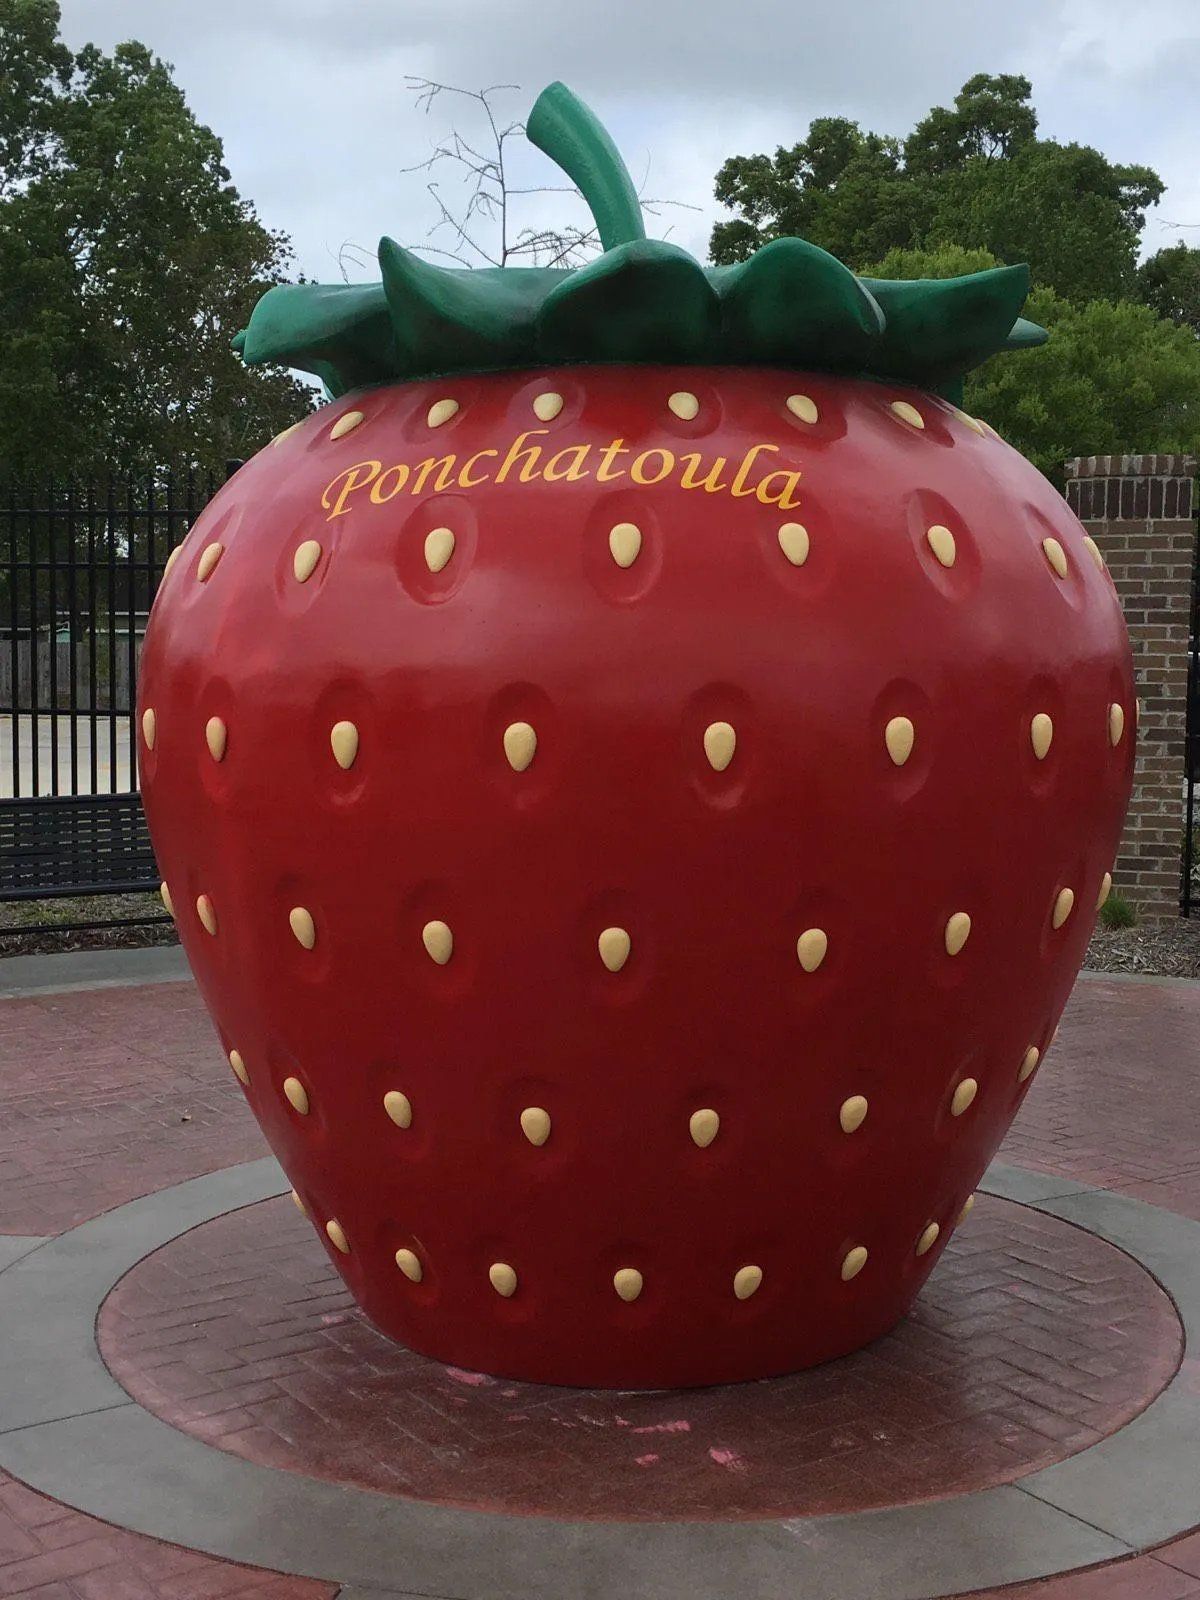 Strawberry Statue in Ponchatoula